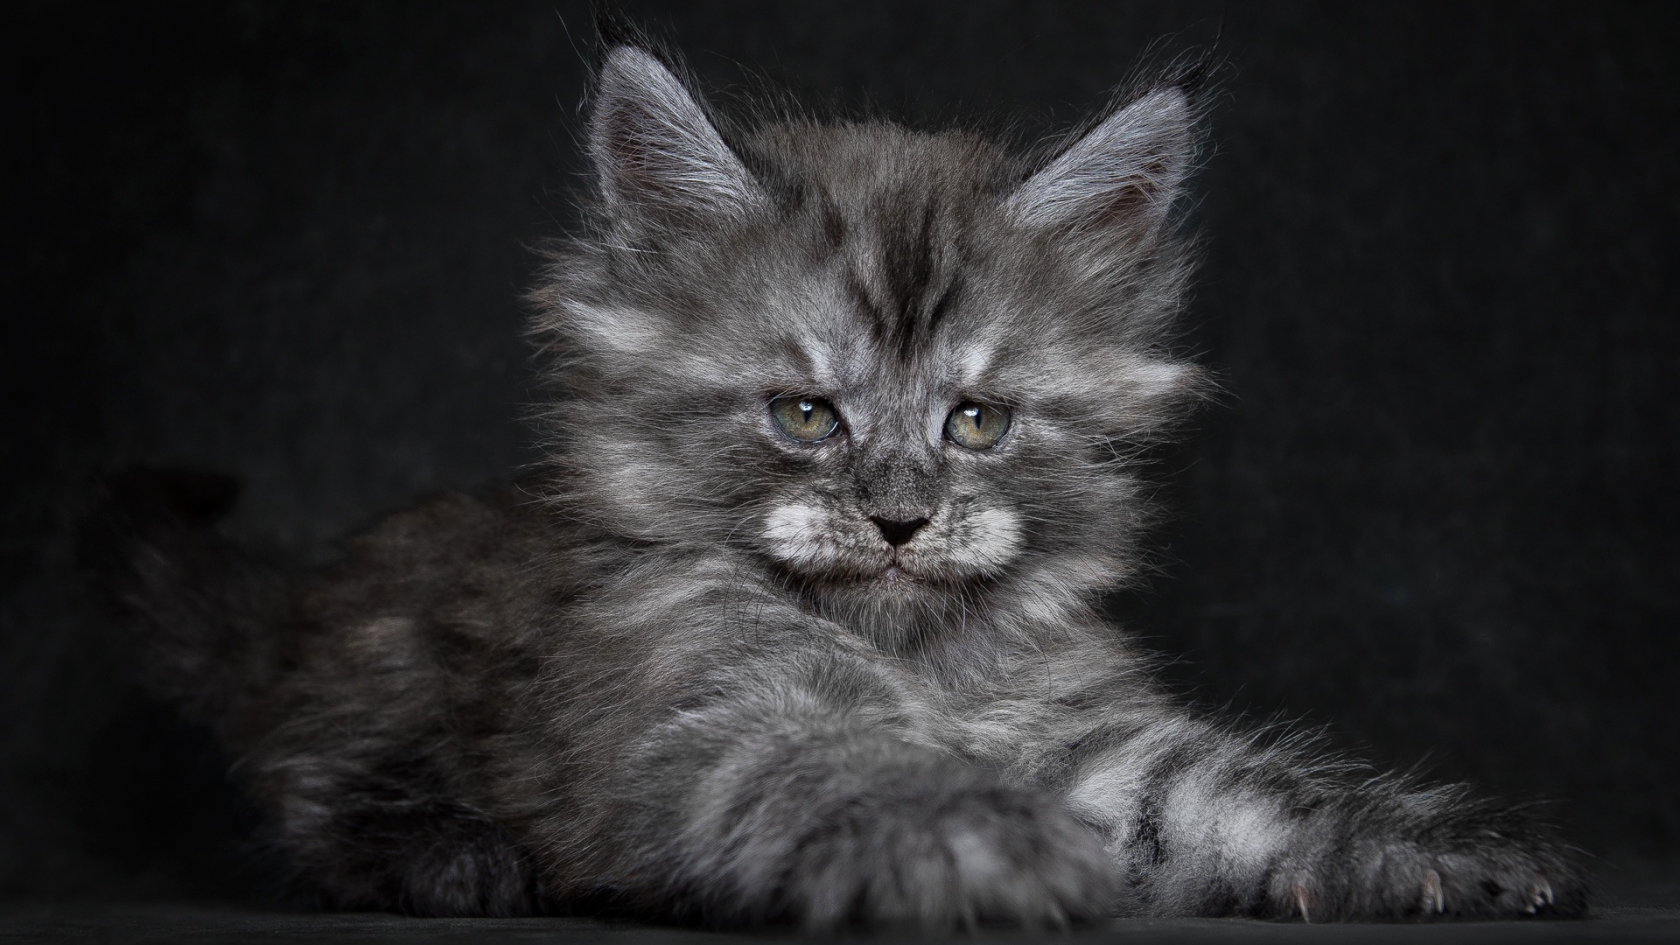 Cute Fluffy Kitten for 1680 x 945 HDTV resolution